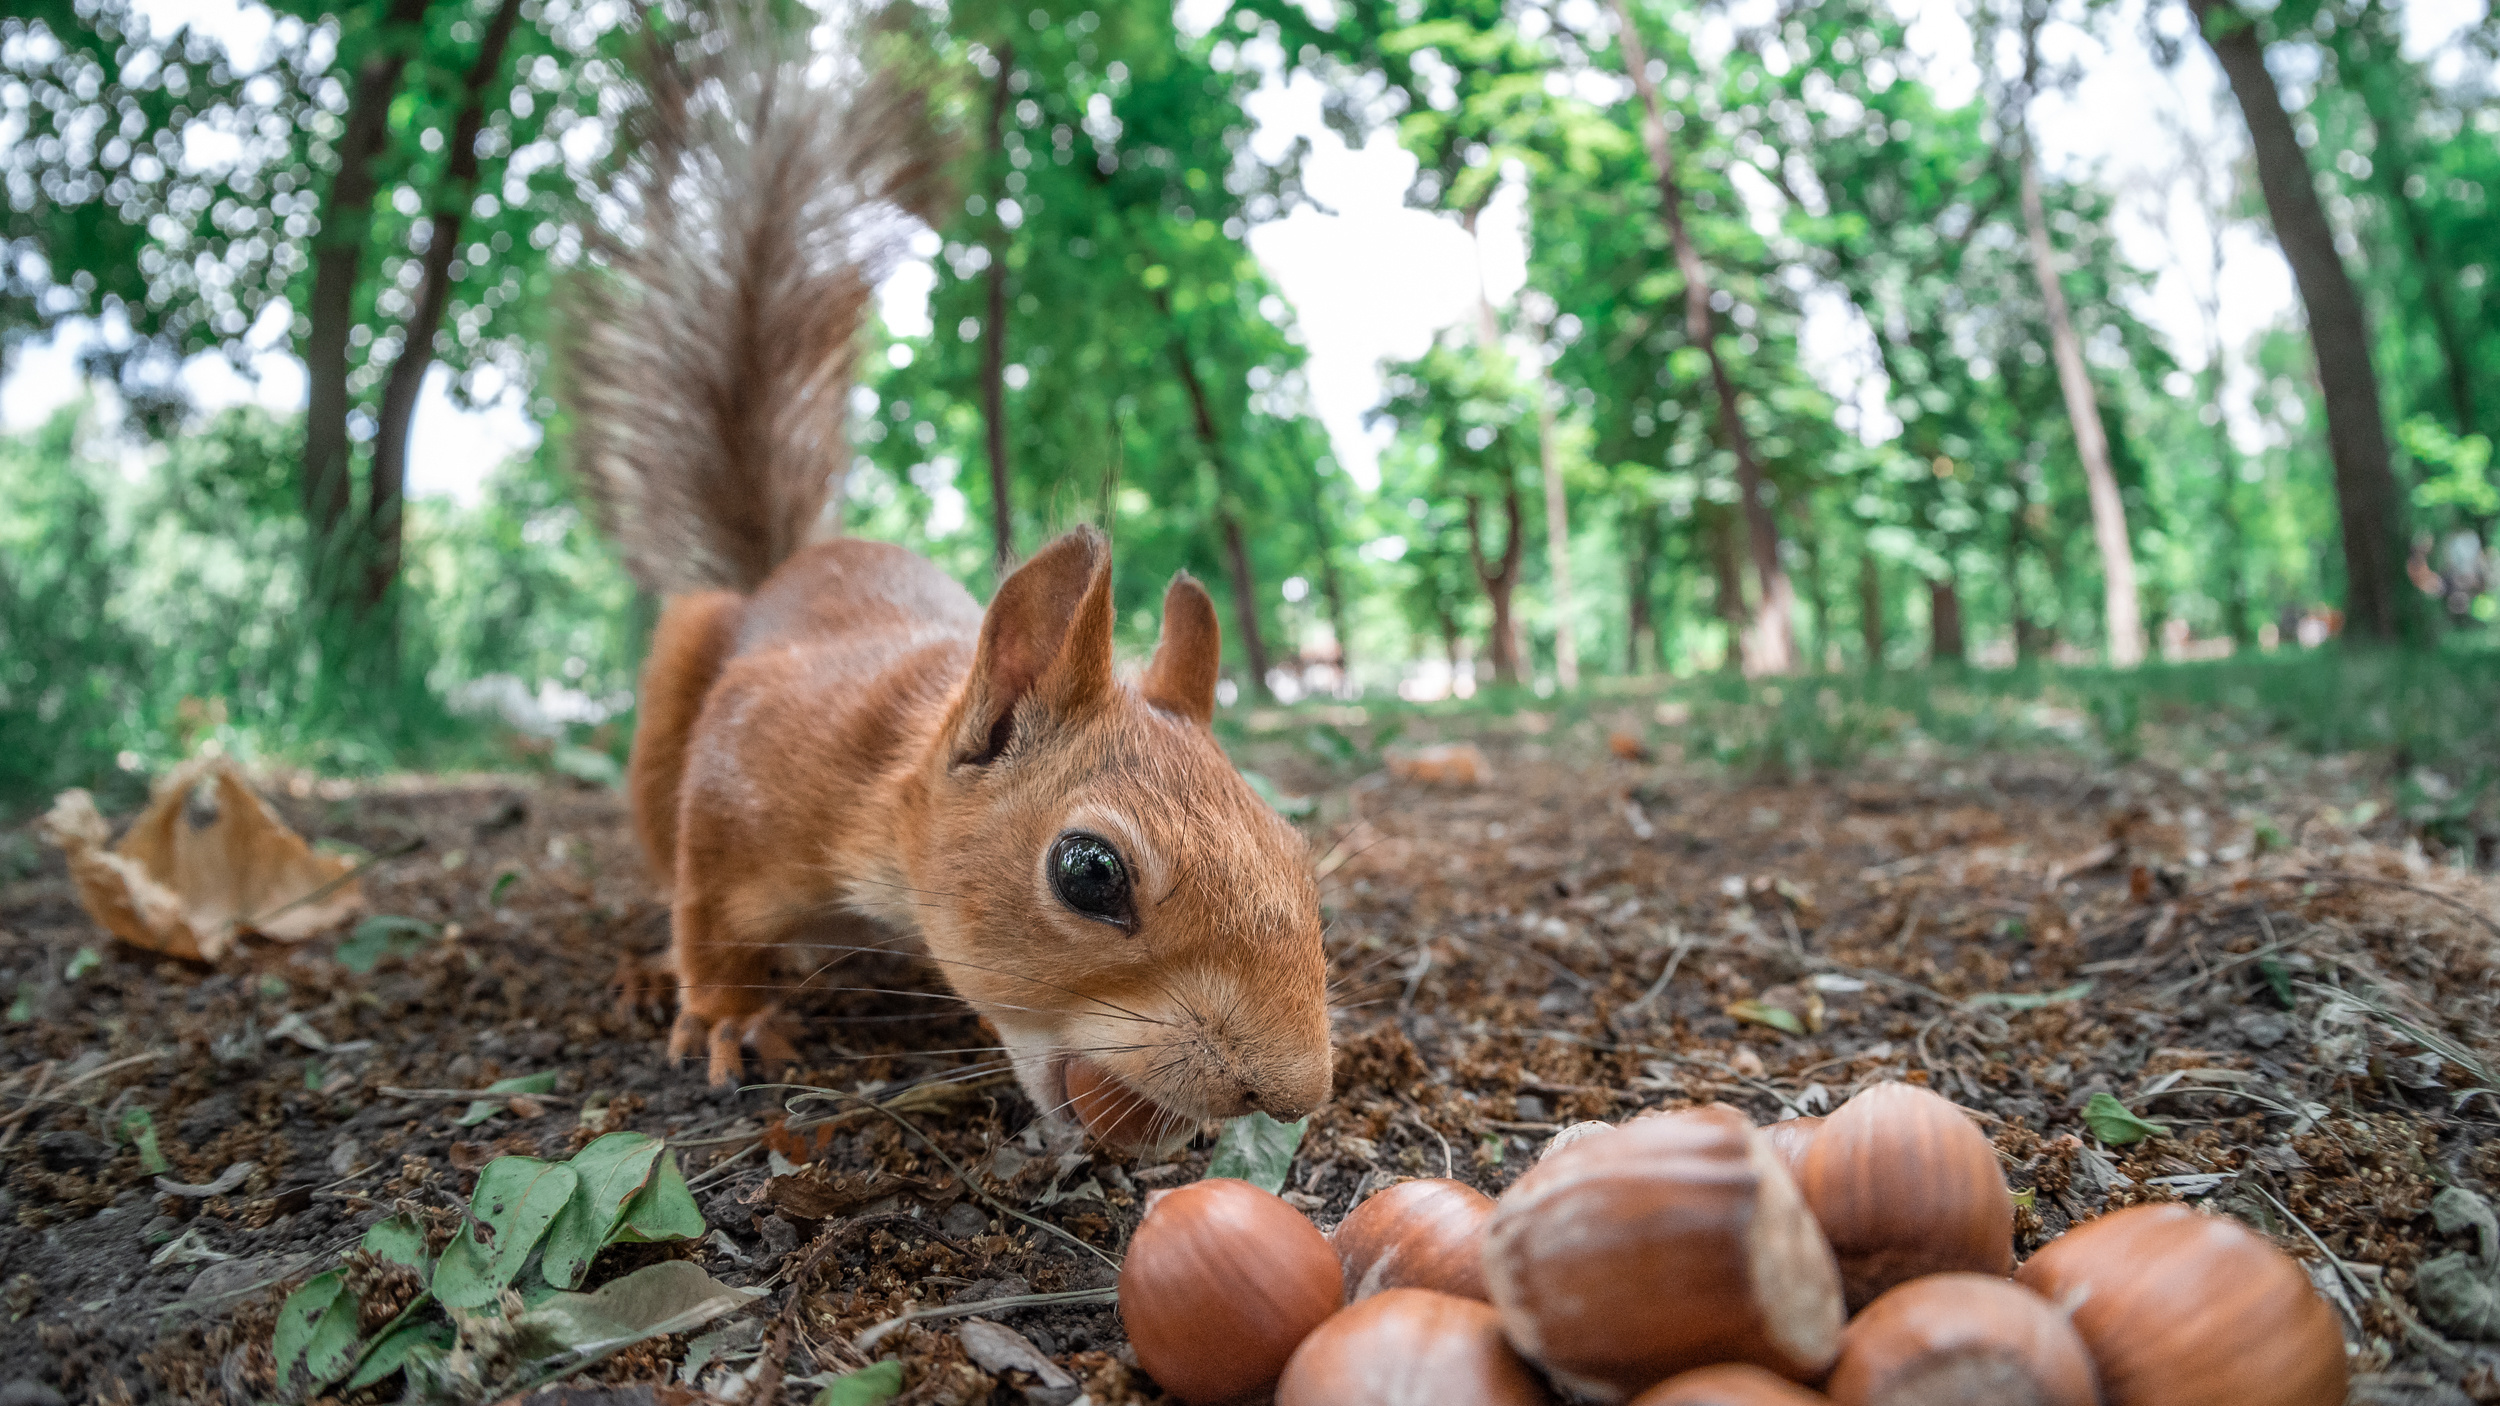 Маленькие бельчата угощаются орешками в парке Революции — фоторепортаж повышенной милоты